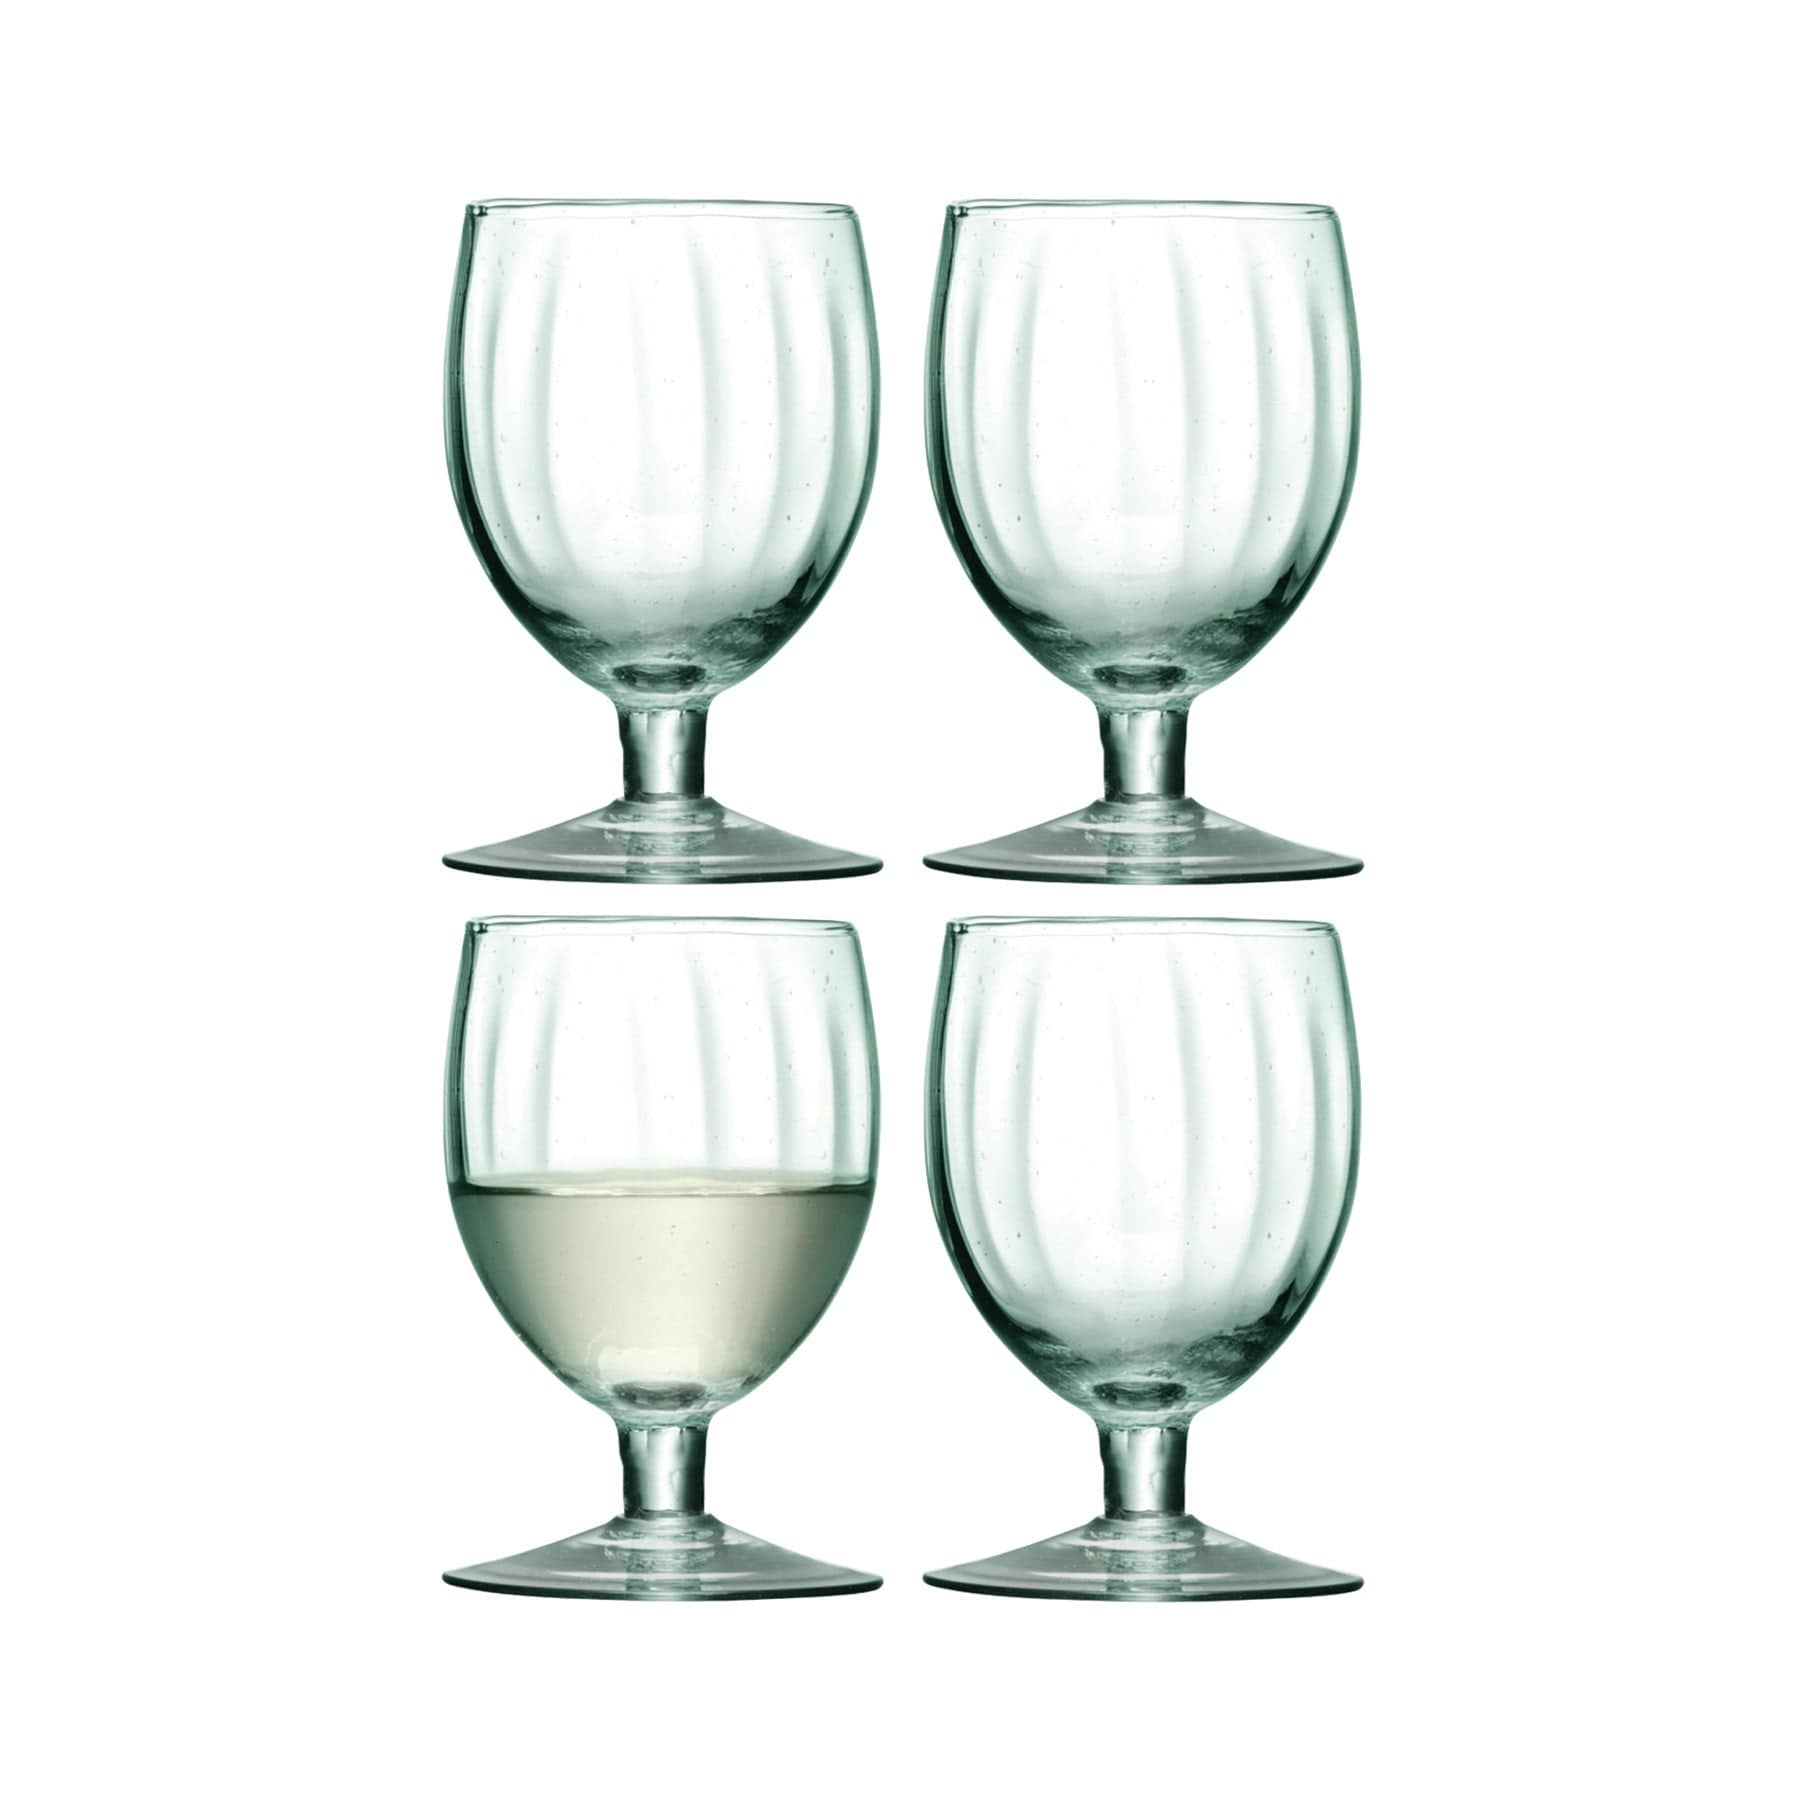 Mia wine glass 350ml x 4